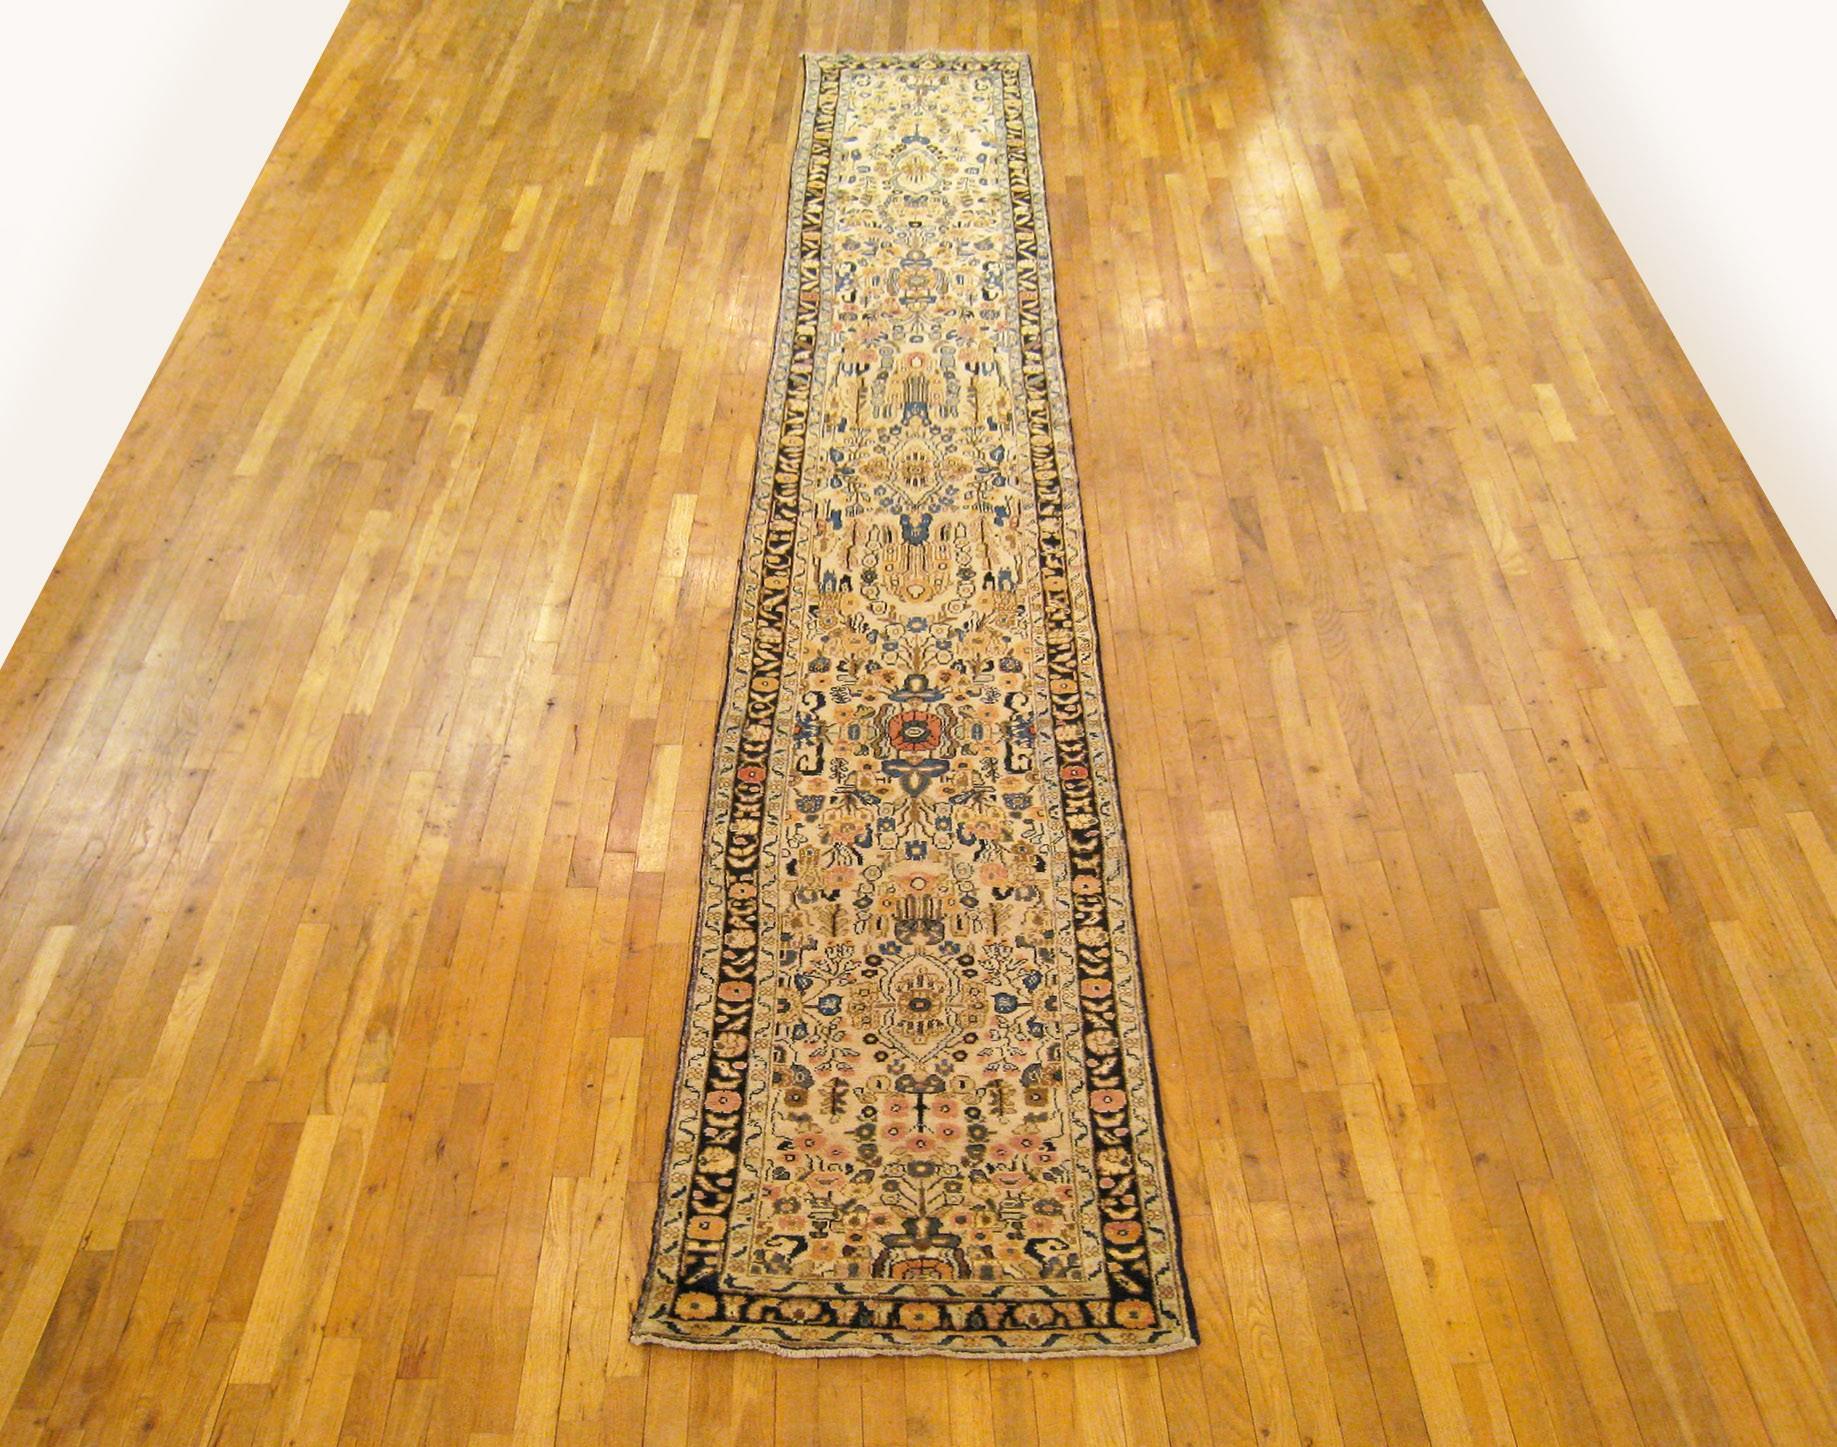 Un tapis vintage persan Hamadan Oriental en taille runner, taille 16'6 x 2'6, circa 1930. Ce joli tapis noué à la main présente un éblouissant motif floral dans le champ central ivoire, alternant entre des éléments floraux à petite et grande